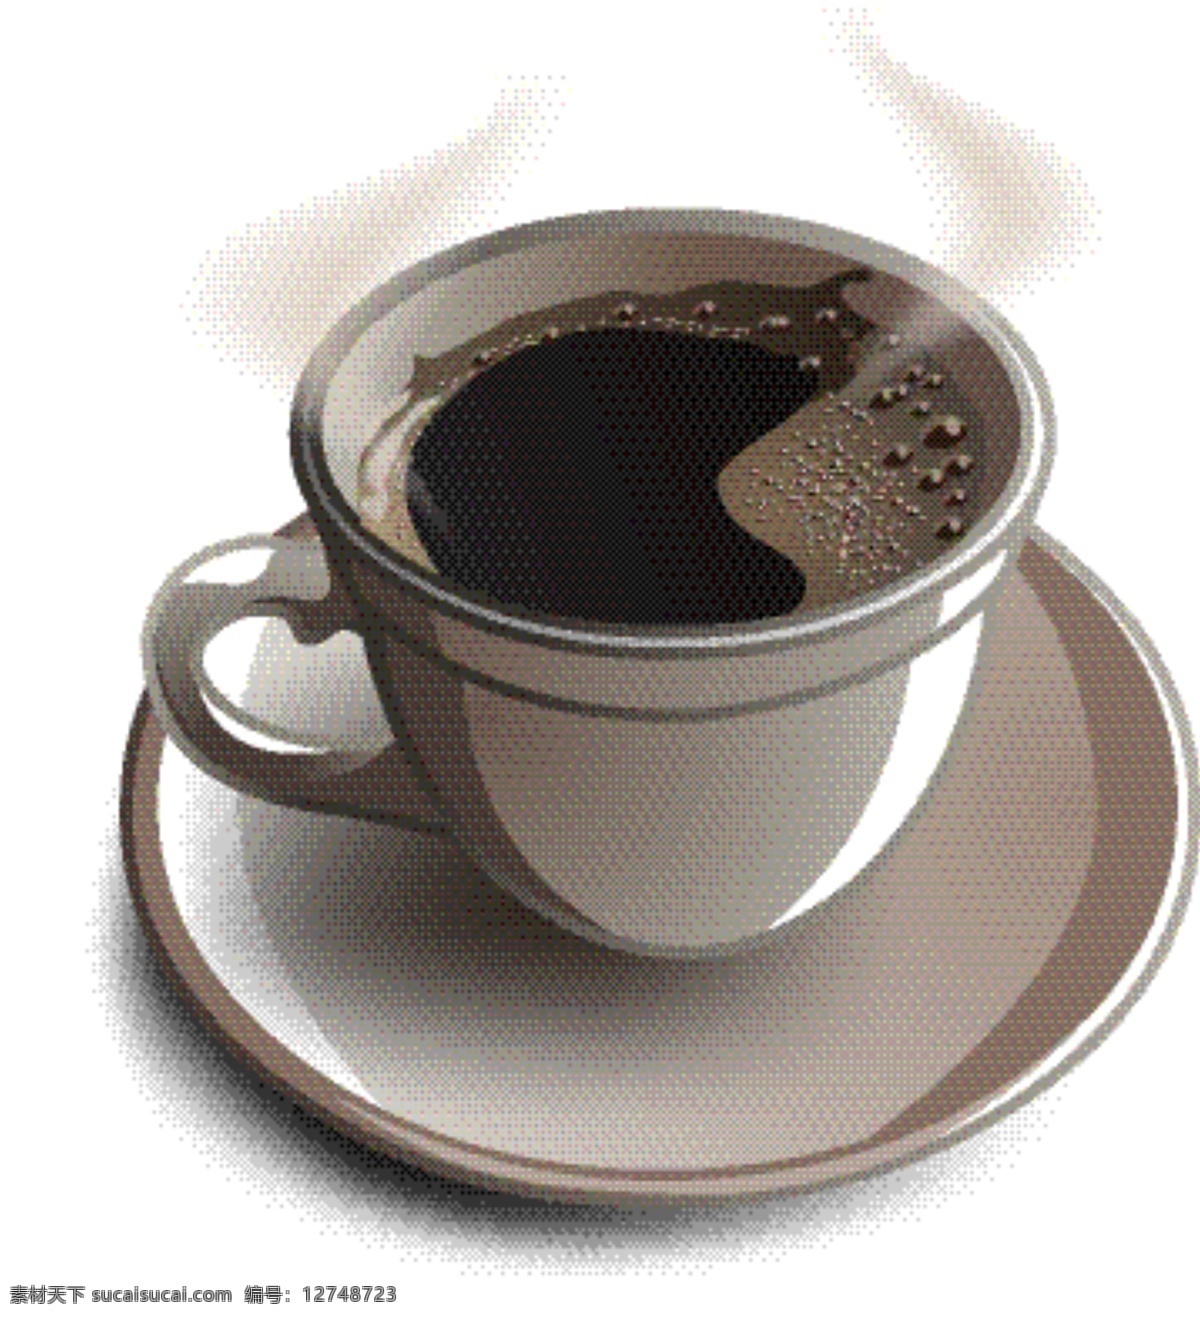 咖啡图标 咖啡 咖啡设计 咖啡标志 咖啡店 咖啡元素 咖啡店图标 logo coffee 咖啡商标 图标 标志 vi icon 小图标 图标设计 logo设计 标志设计 标识设计 矢量设计 餐饮美食 生活百科 矢量